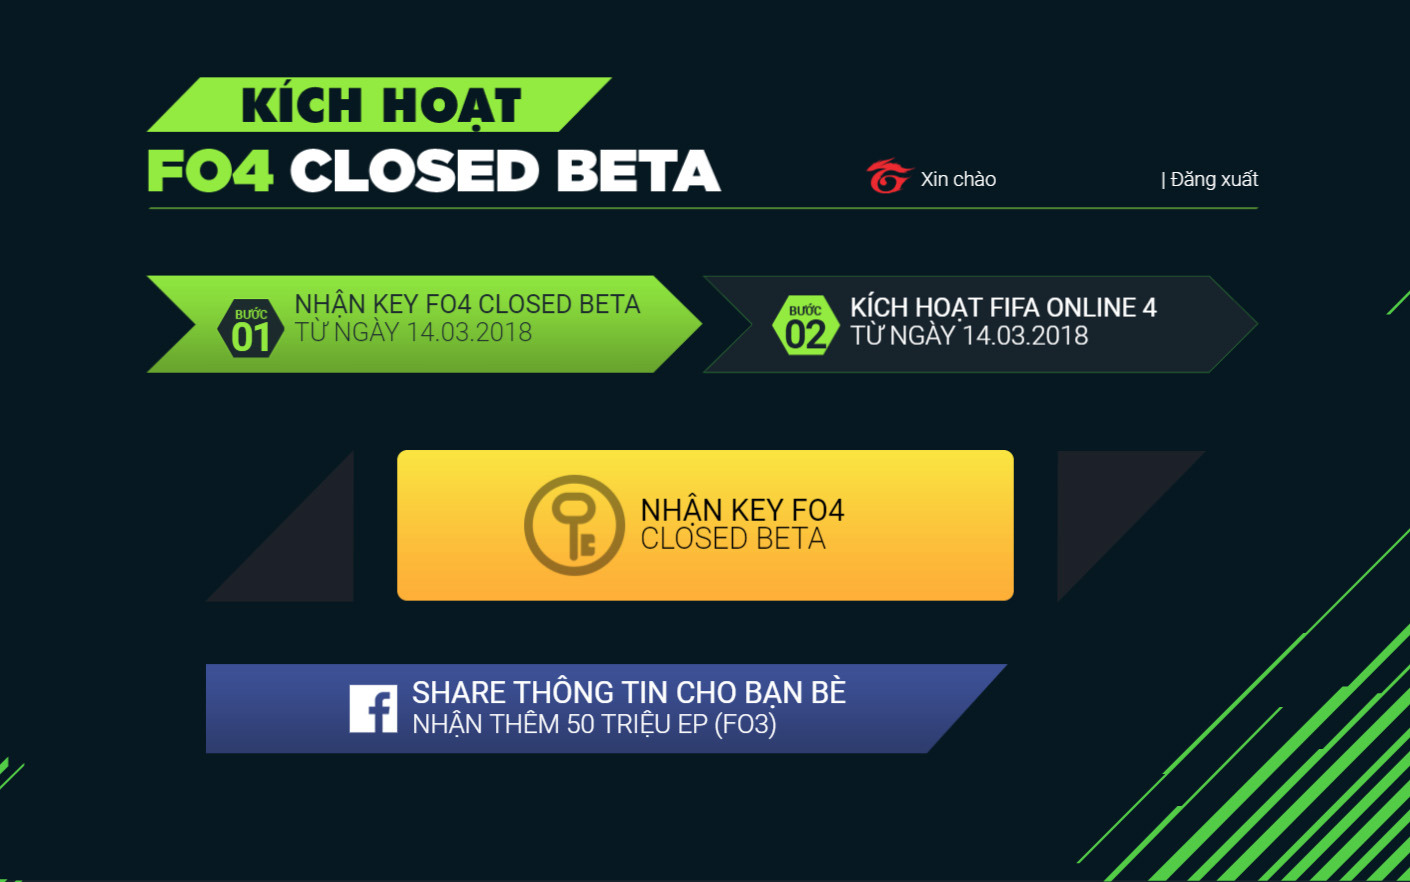 Cơ hội vàng để sở hữu key closed beta FIFA Online 4 Việt Nam!